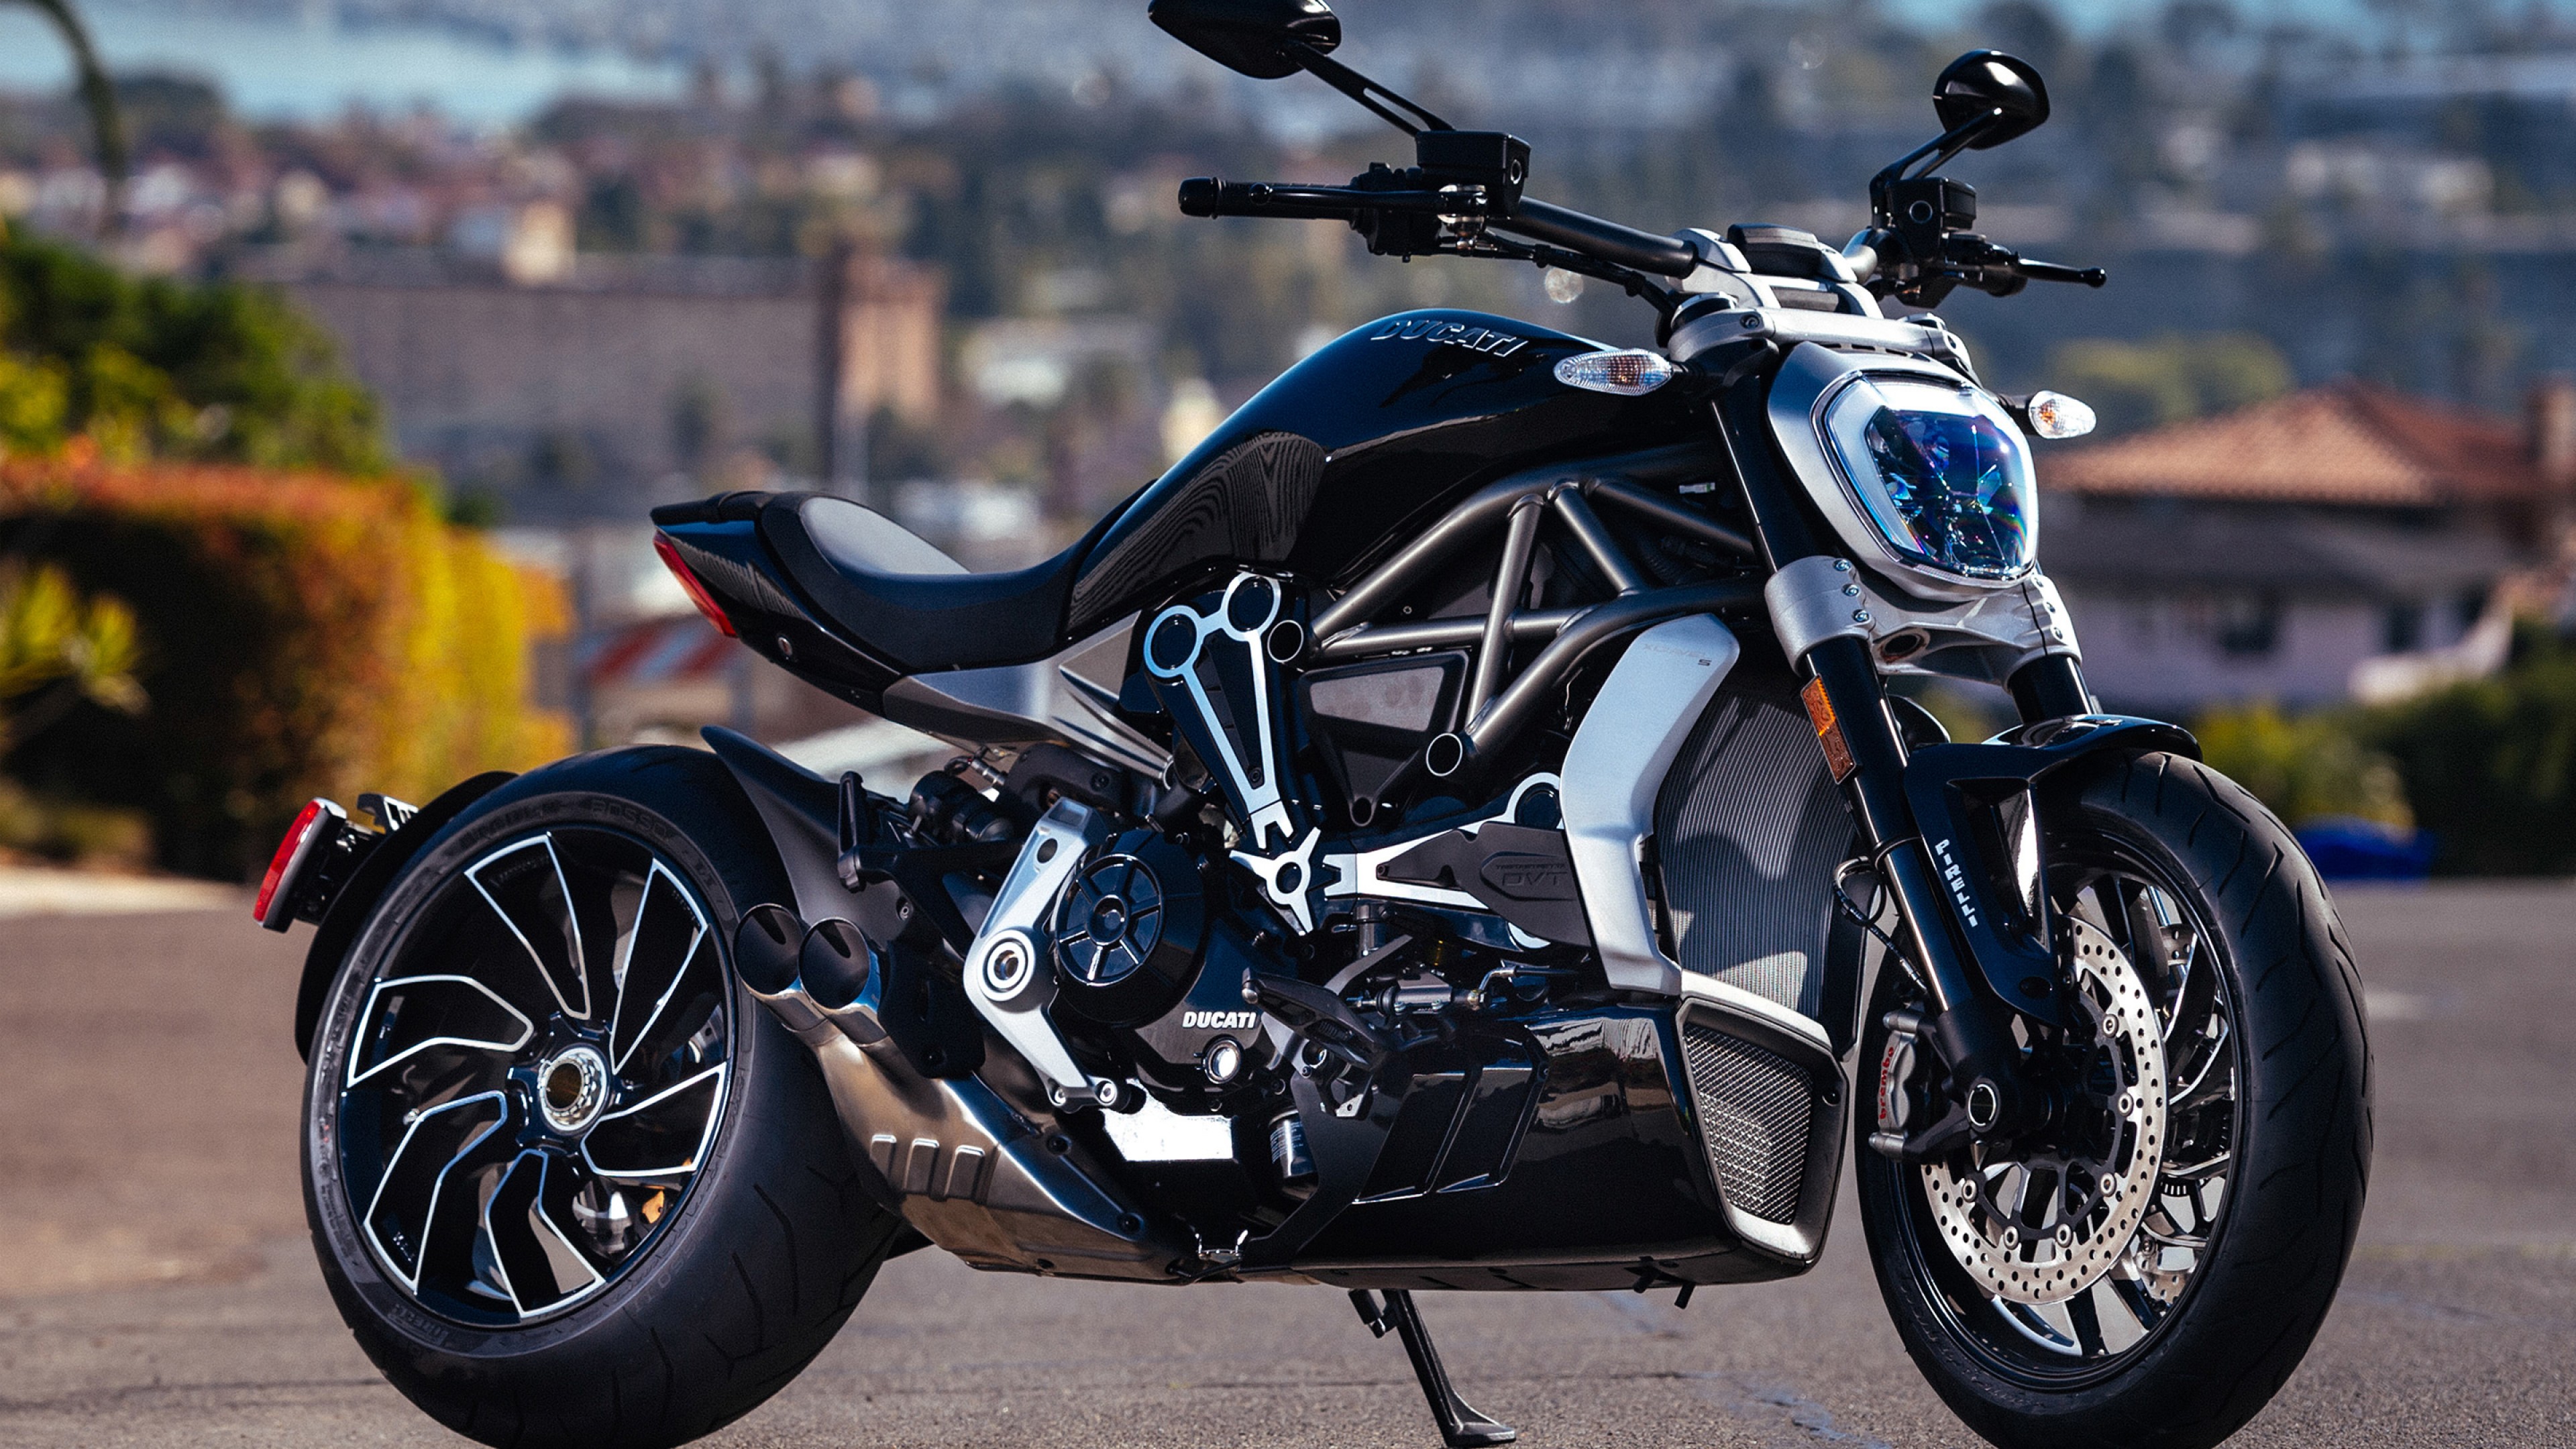 Ducati Diavel Bike HD Wallpaper for Desktop and Mobiles 4K